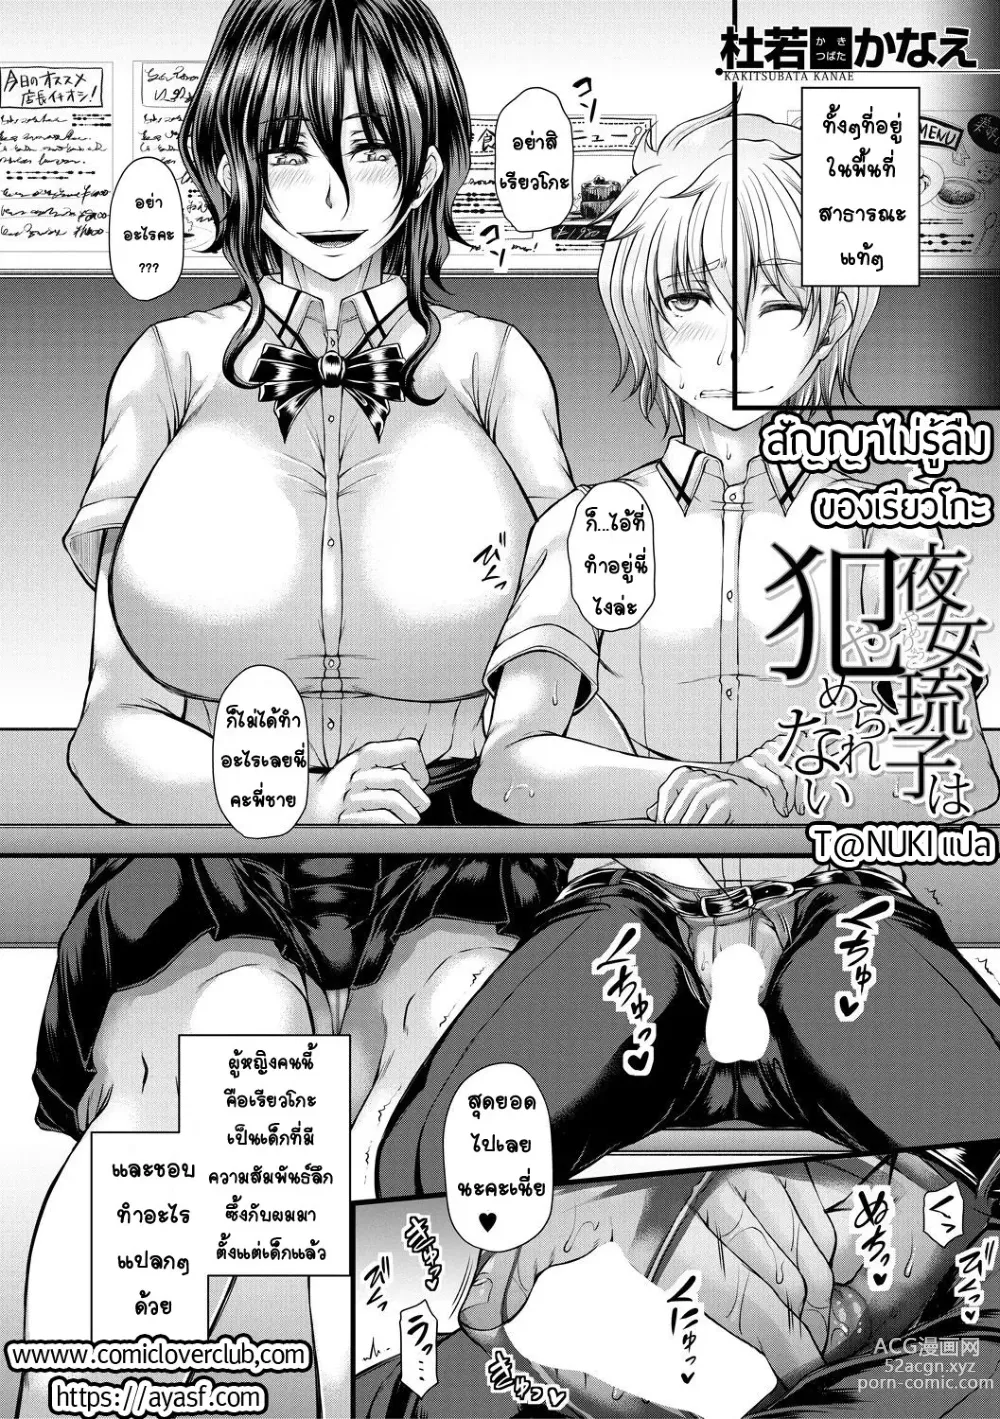 Page 2 of manga kakitsubata Kanae yoru onna ryushi wa han me rarenai 1